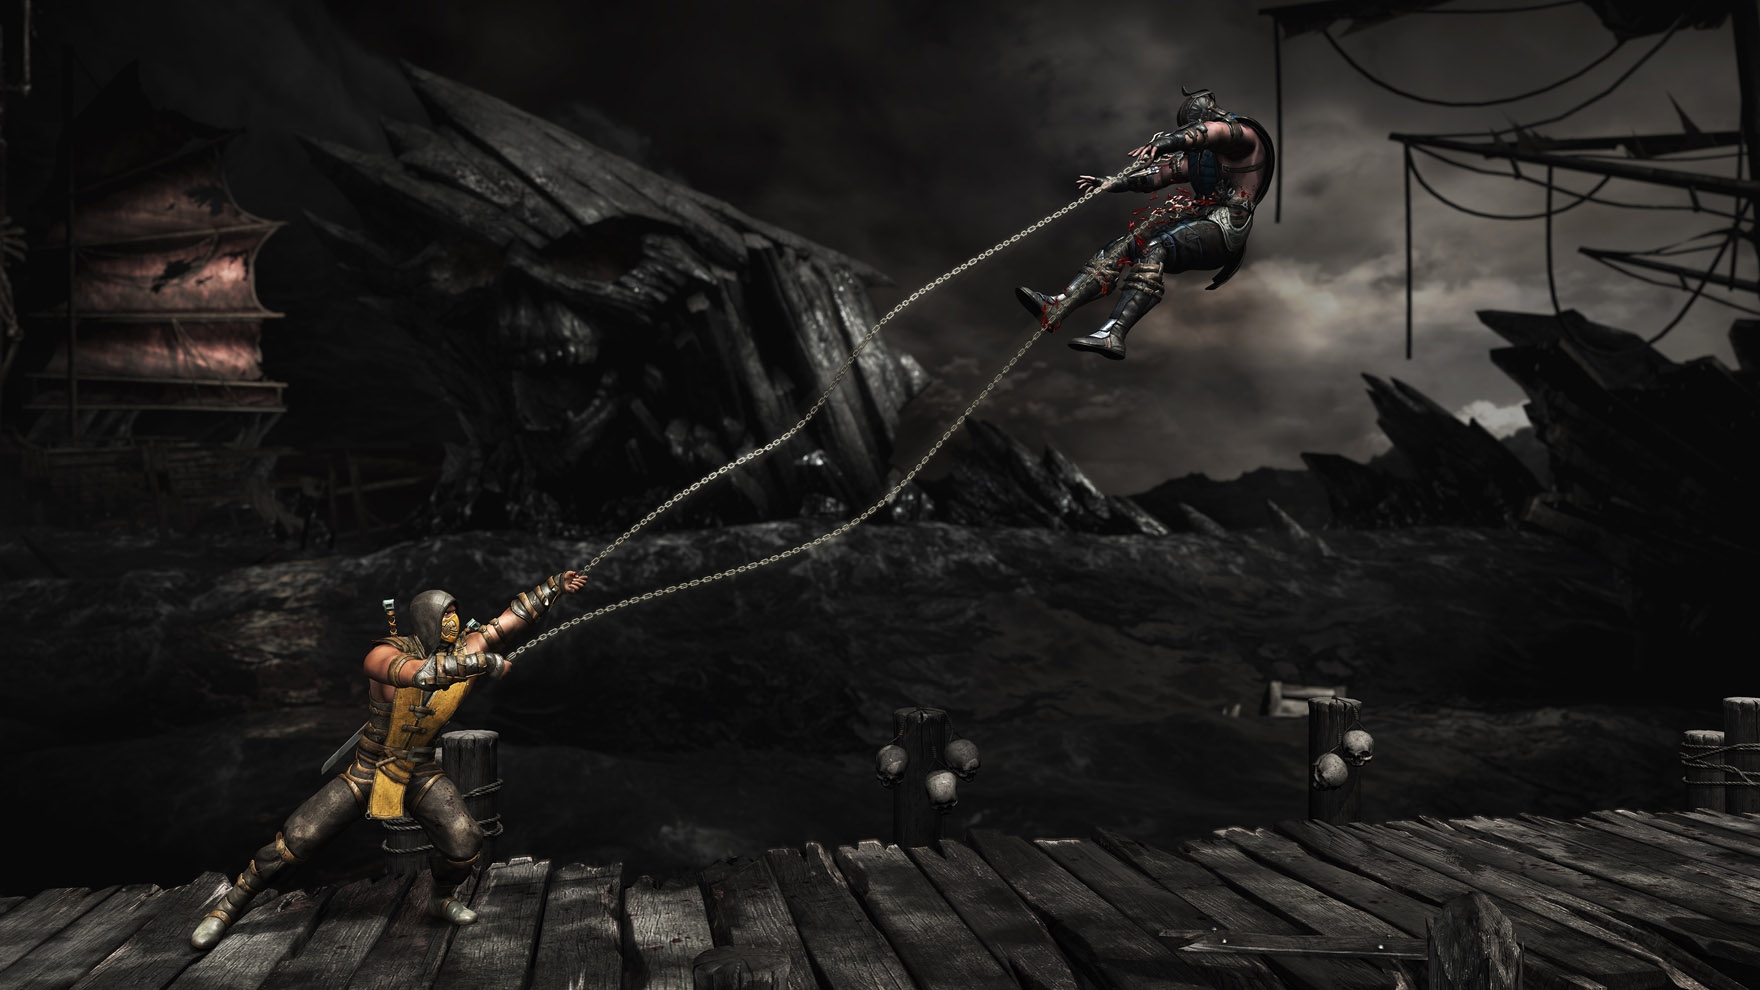 Mortal Kombat X (Steam key) -- RU